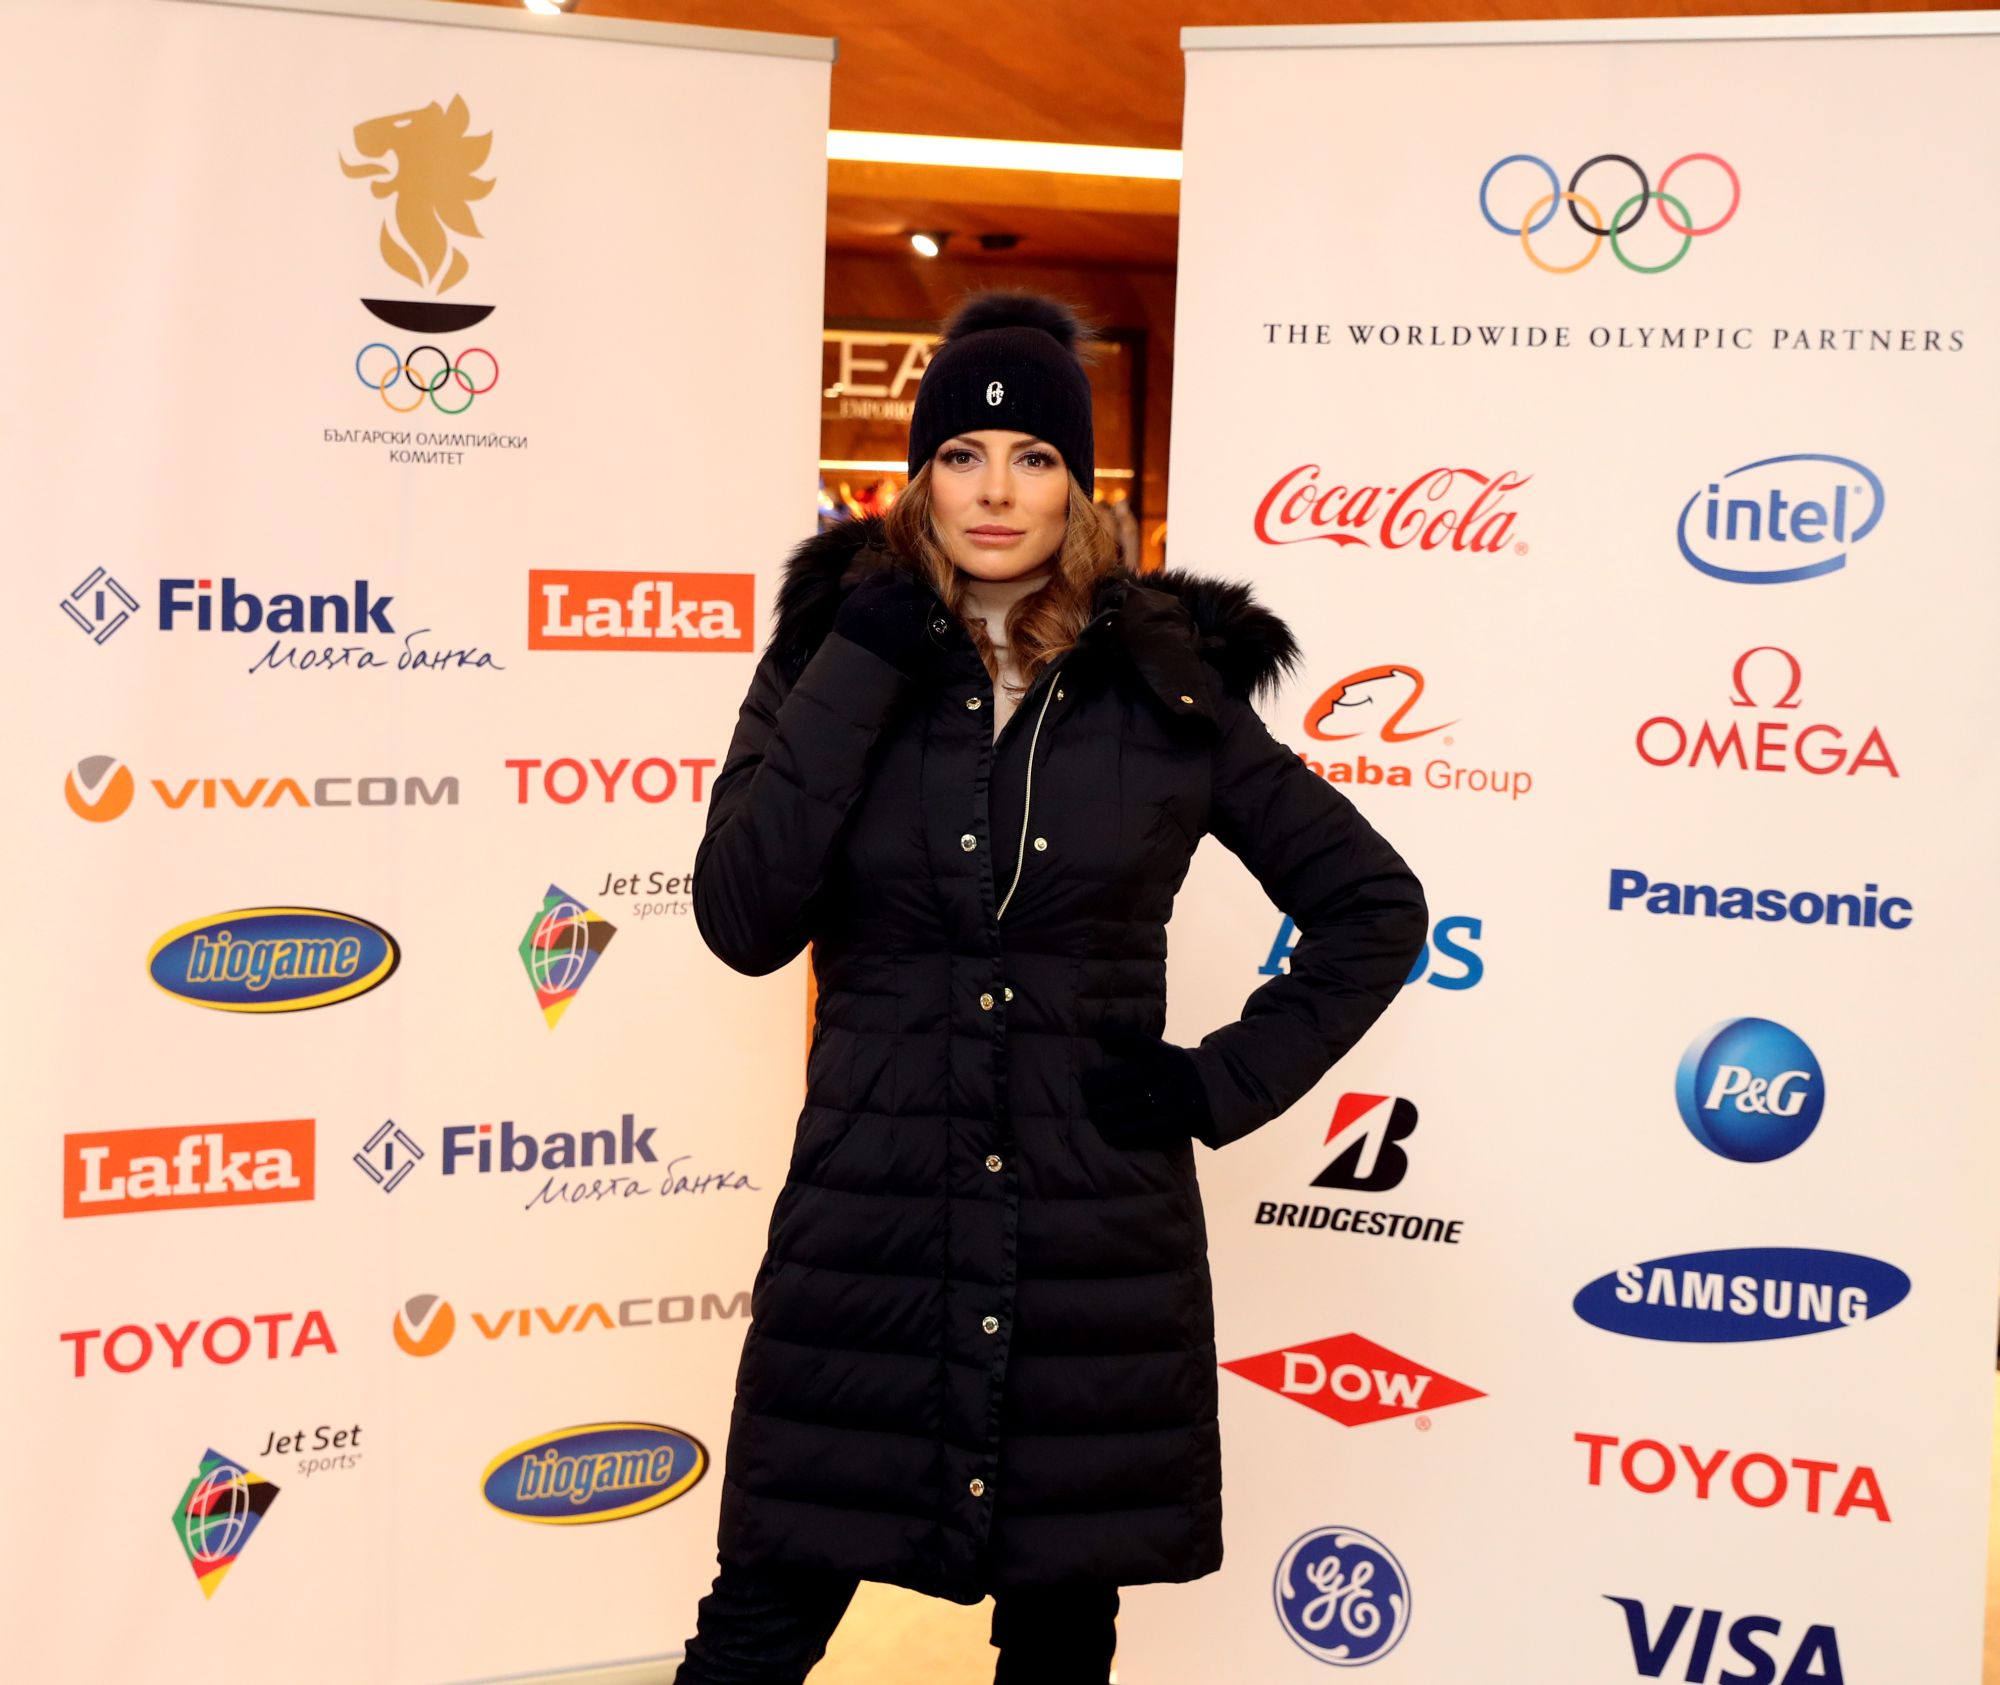 В ролята на манекени, за да презентират екипите, влязоха сноубордистката Александра Жекова и скиорът алпиец Алберт Попов. Спортната екипировка е на италианска фирма и включва яке, грейка, зимни черни панталони, блуза, две спортни горнища, кожени ръкавици, леко пухено зимно яке в червено-черно, шапка в цветовете на националния трикольор и др.